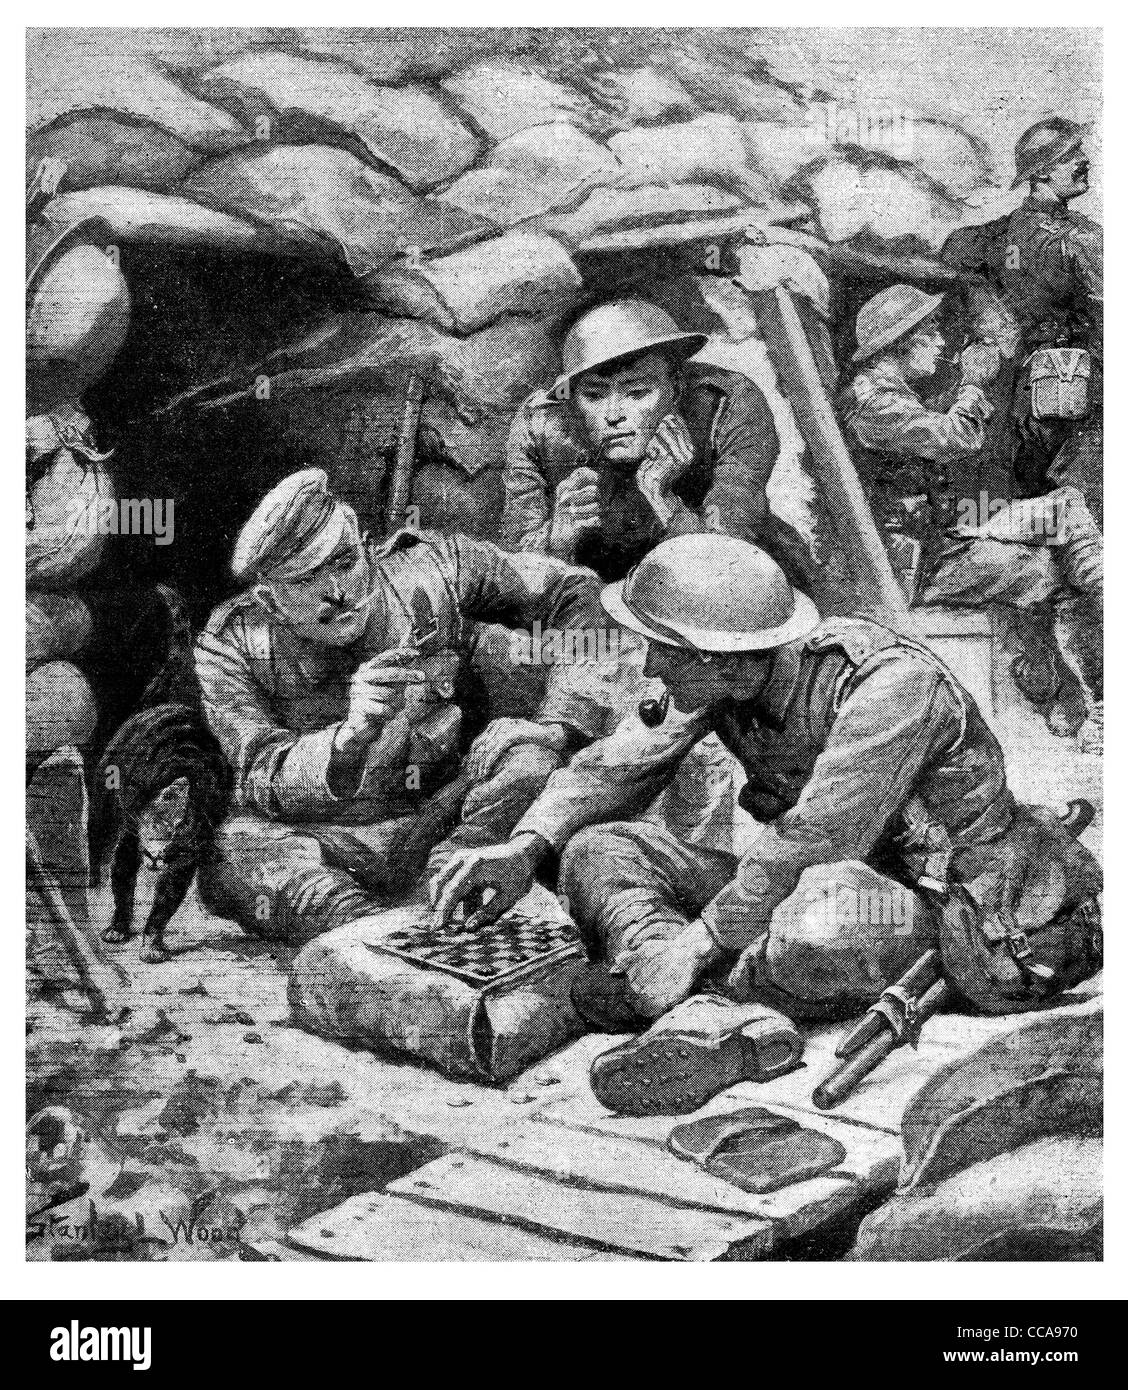 1917 soldats de la guerre des tranchées jouer jeu de dames Brouillons chat fumeur fumeur de pipe que temps de sable board Banque D'Images